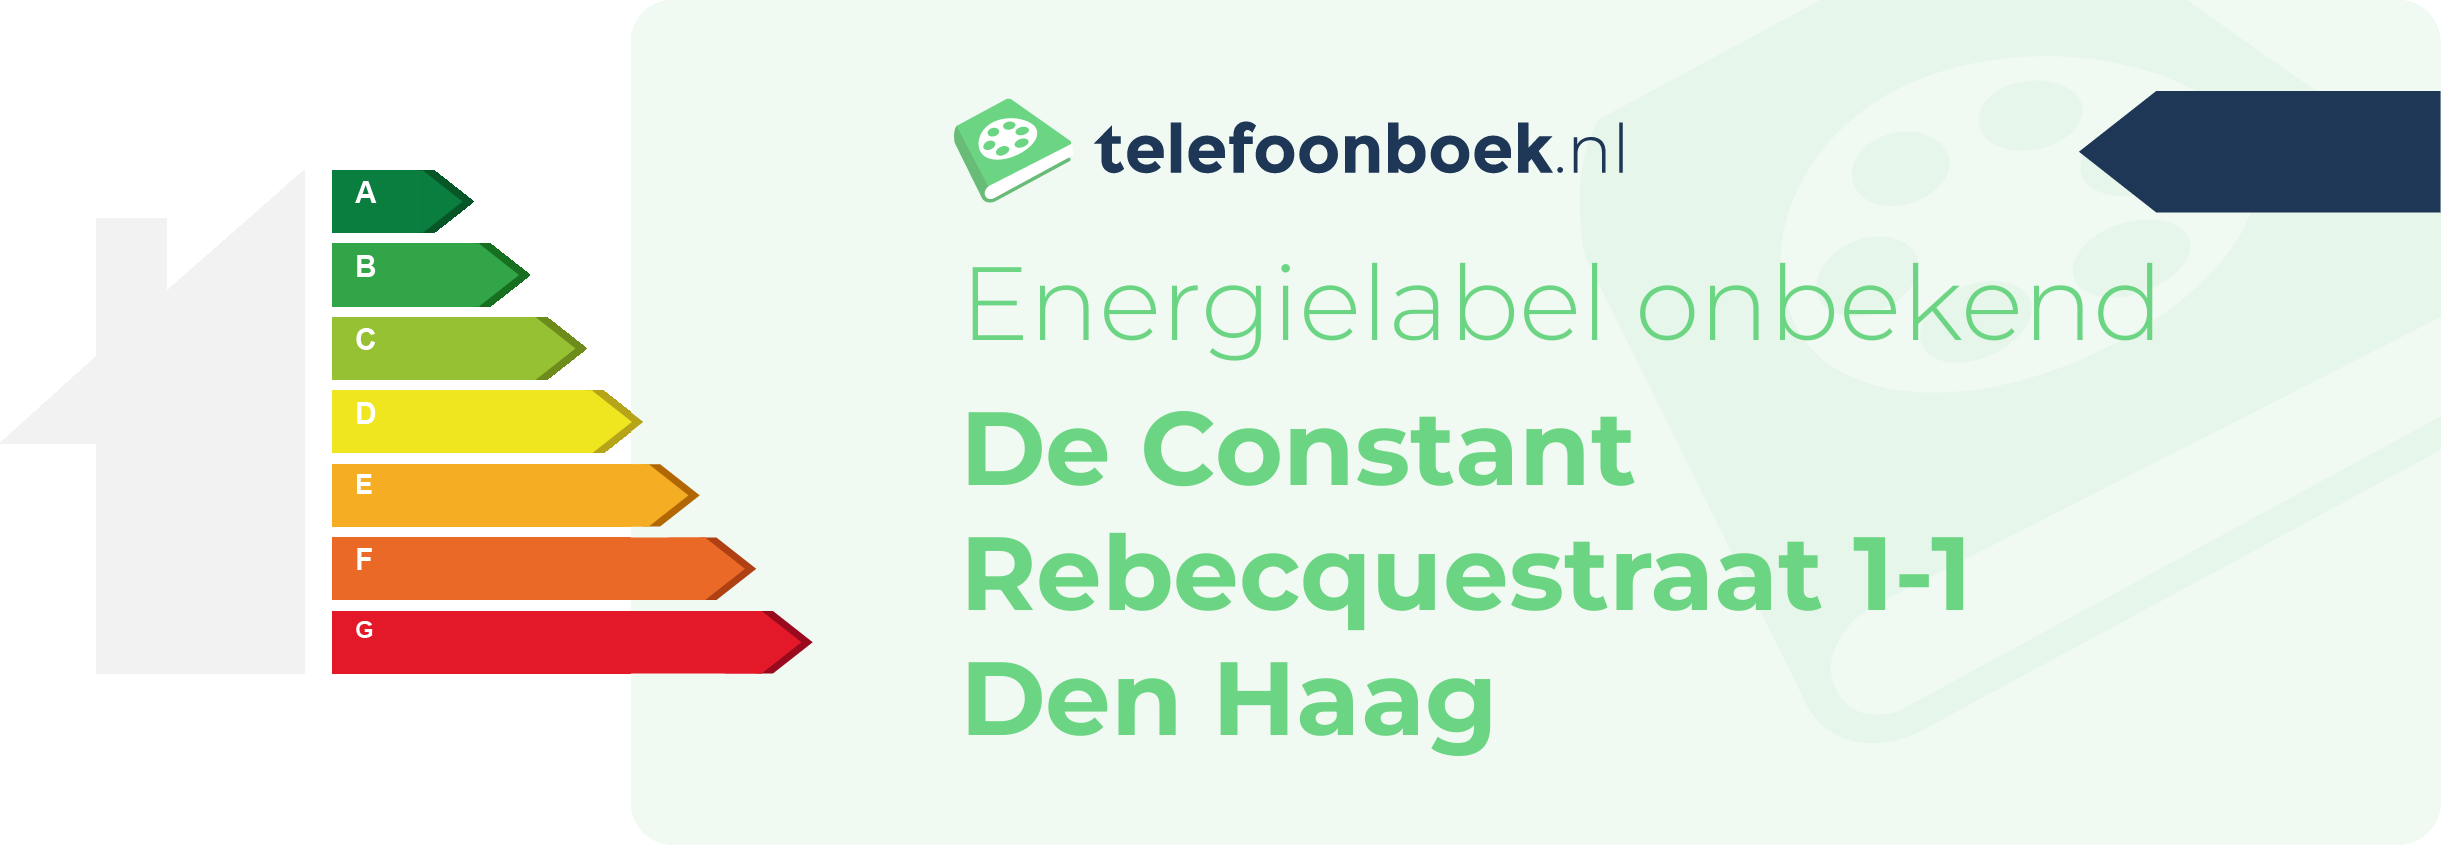 Energielabel De Constant Rebecquestraat 1-1 Den Haag